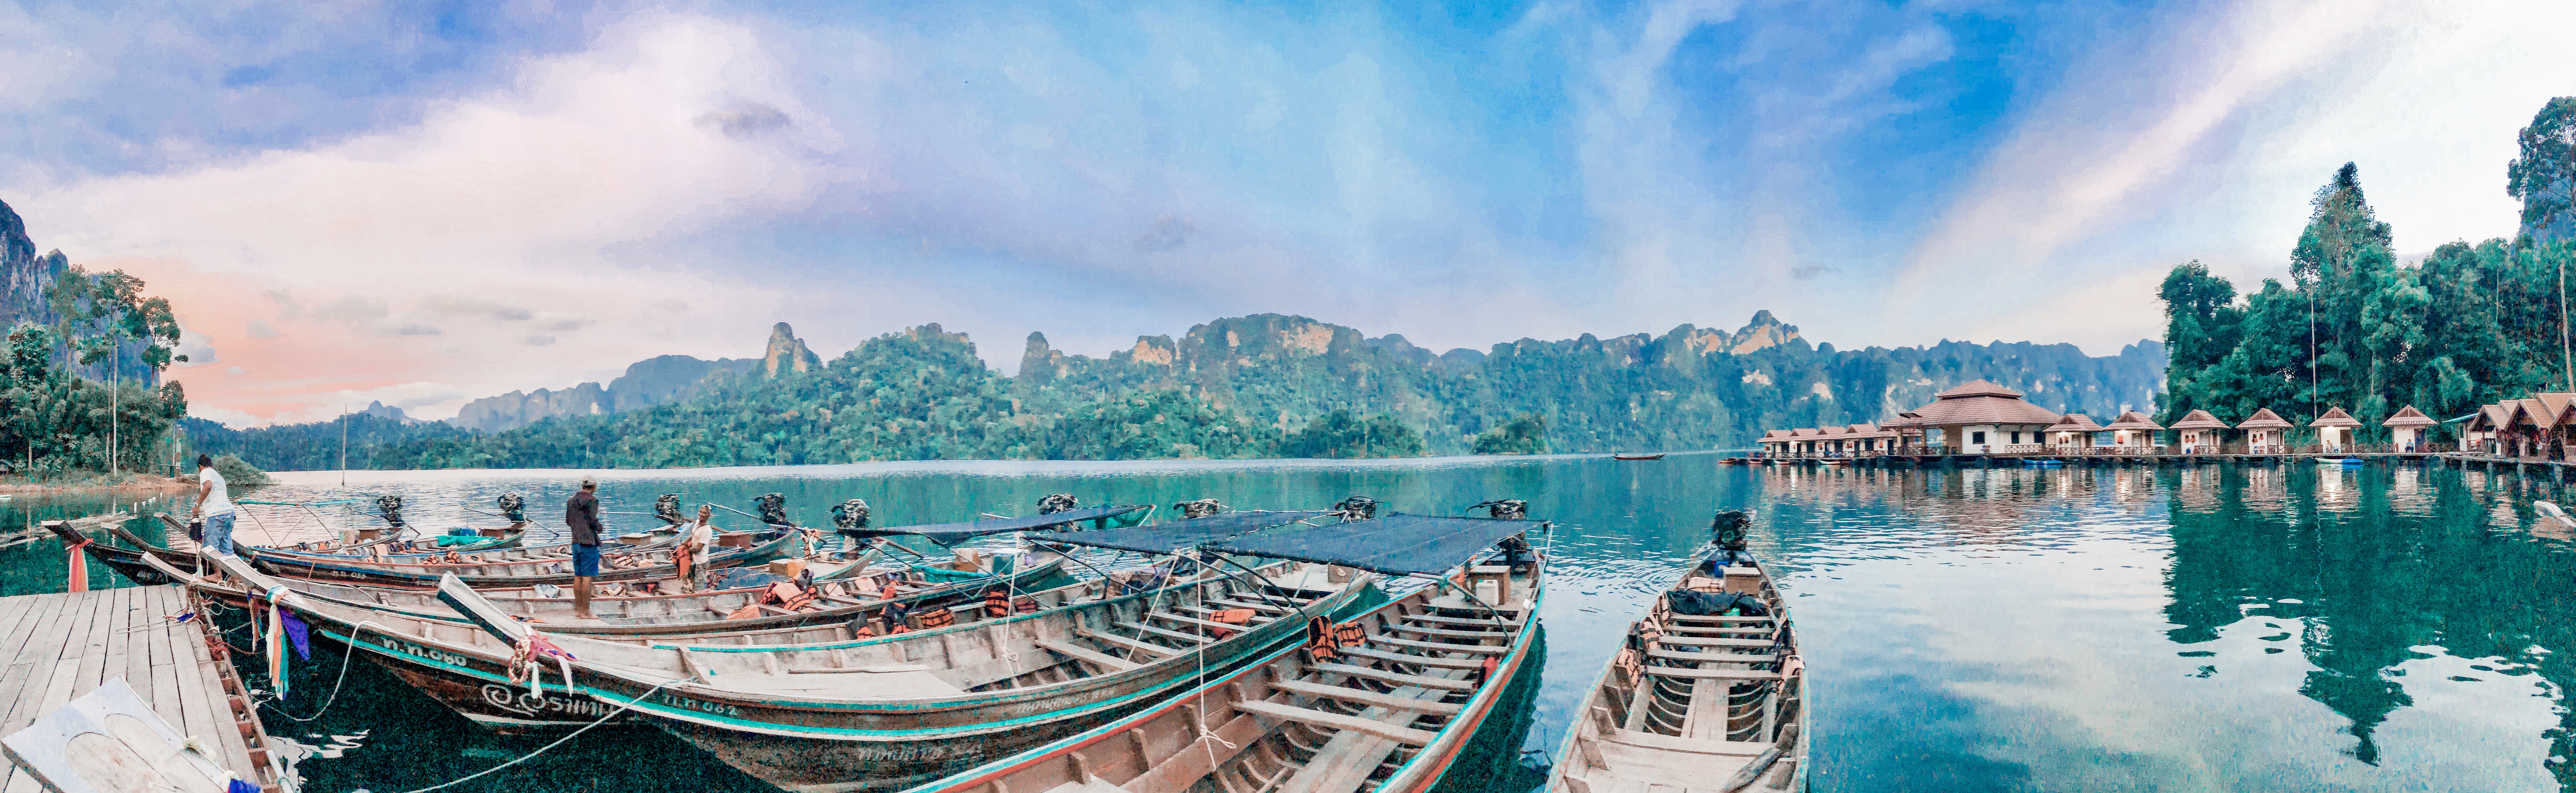 Thai longtail boats on khao sok lake